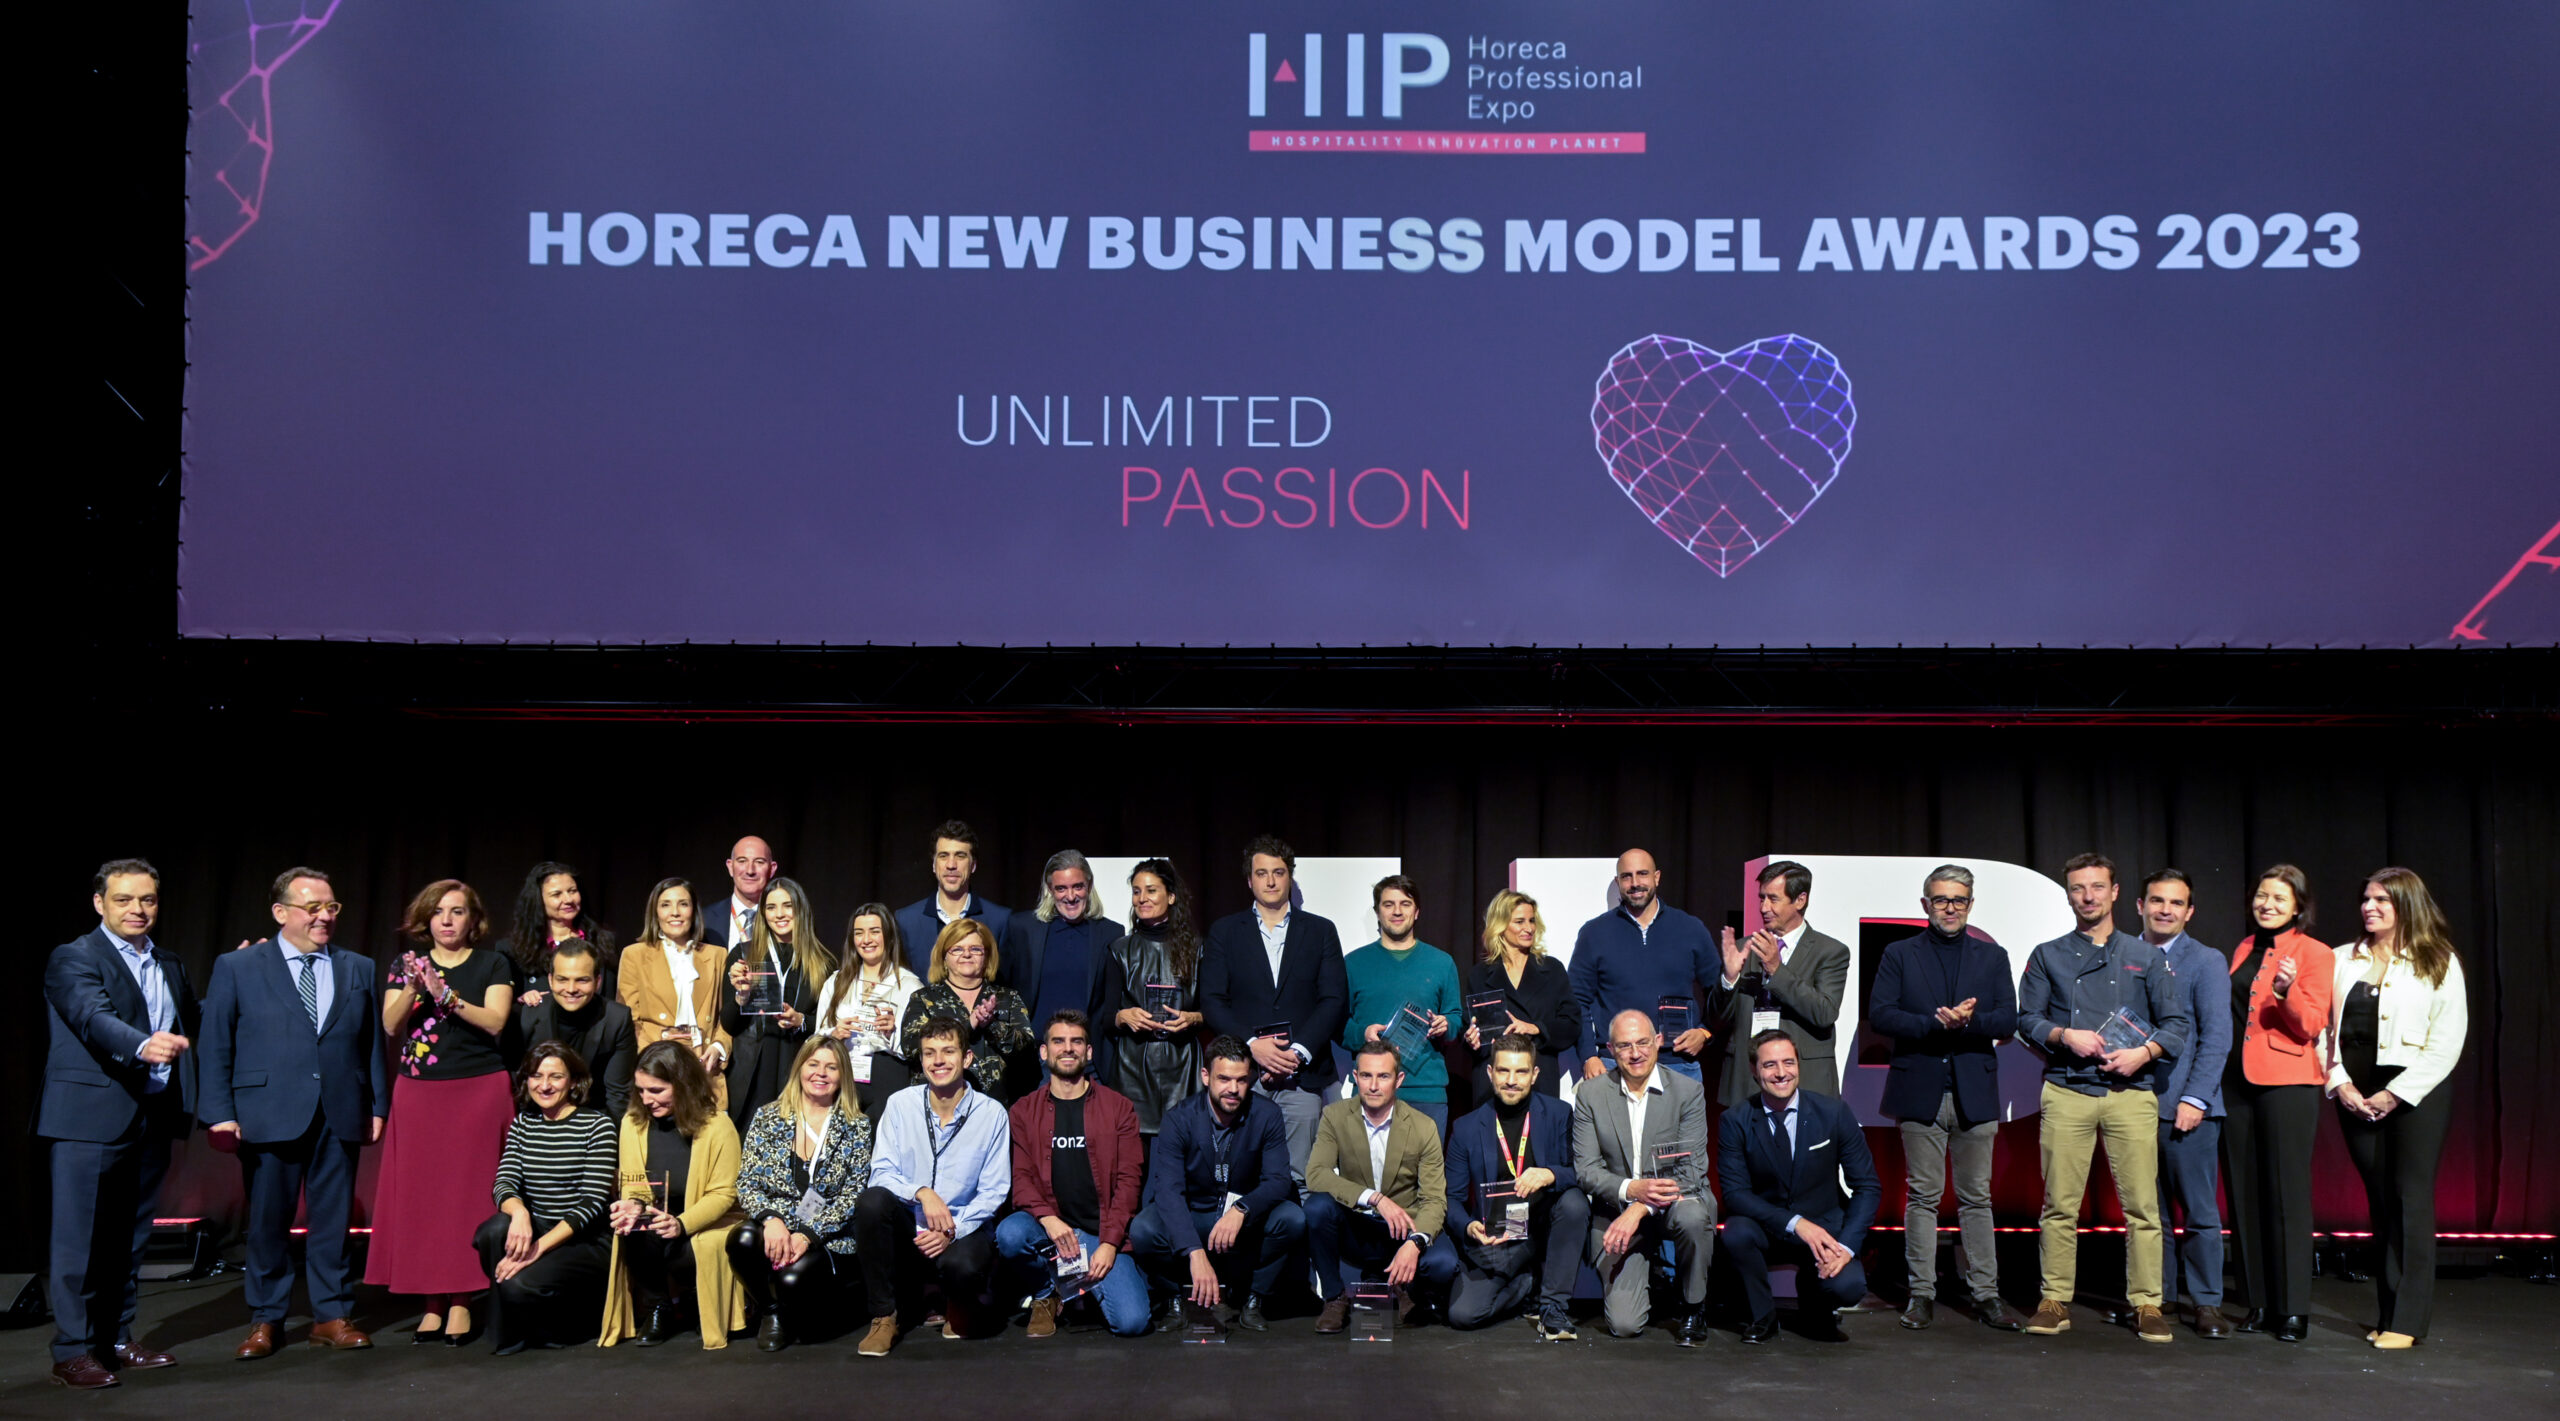 La automatización de cocinas con “deeptech”, experiencias inmersivas y gominolas de cócteles, entre los premiados en los Horeca New Business Models Awards 2023